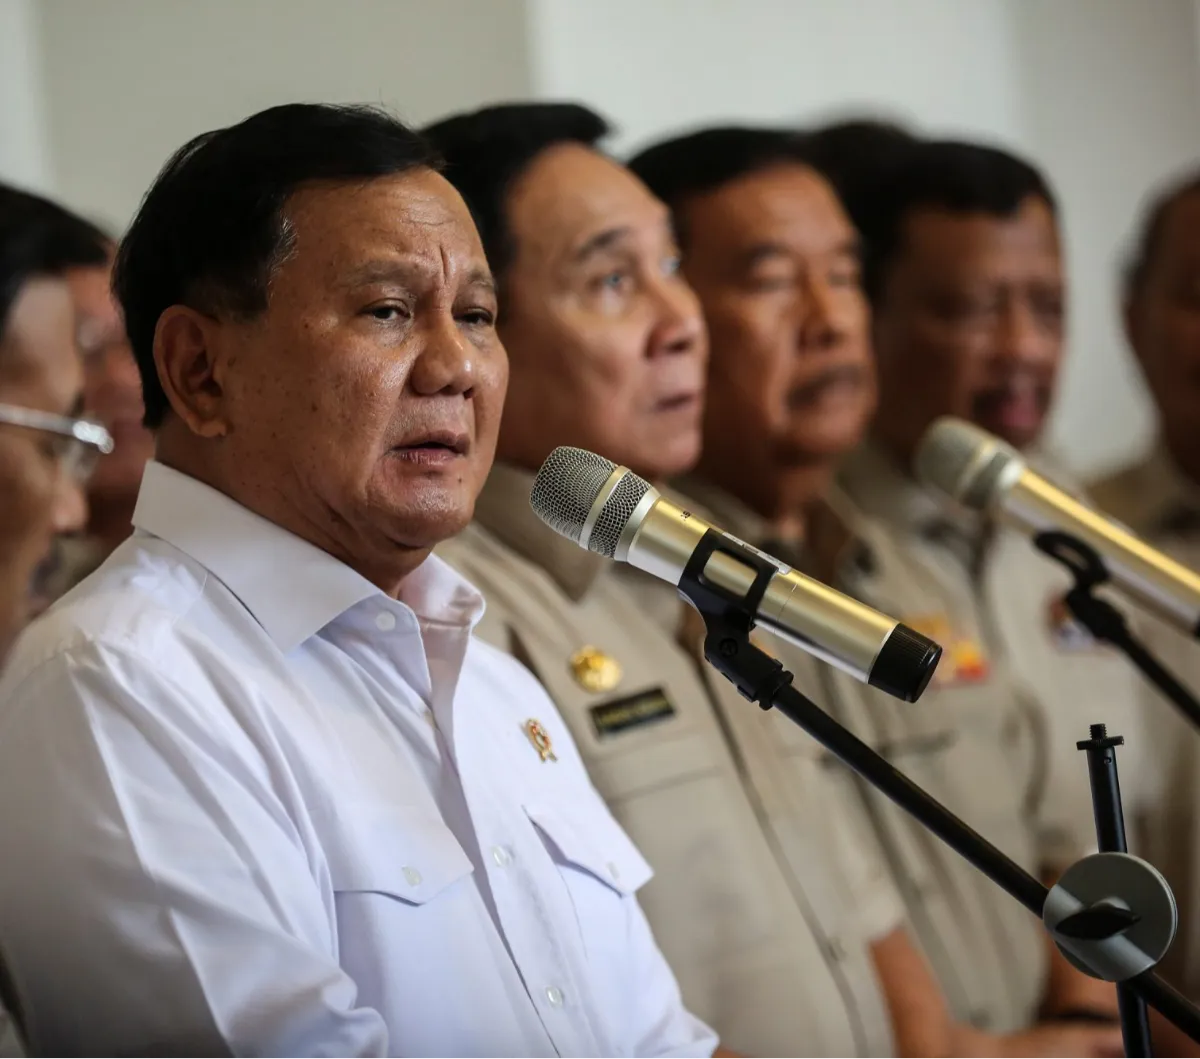 Muzani juga membeberkan kisi-kisi siapa calon wakil presiden untuk Prabowo Subianto. Muzani menyampaikannya dengan sebuah pantun.